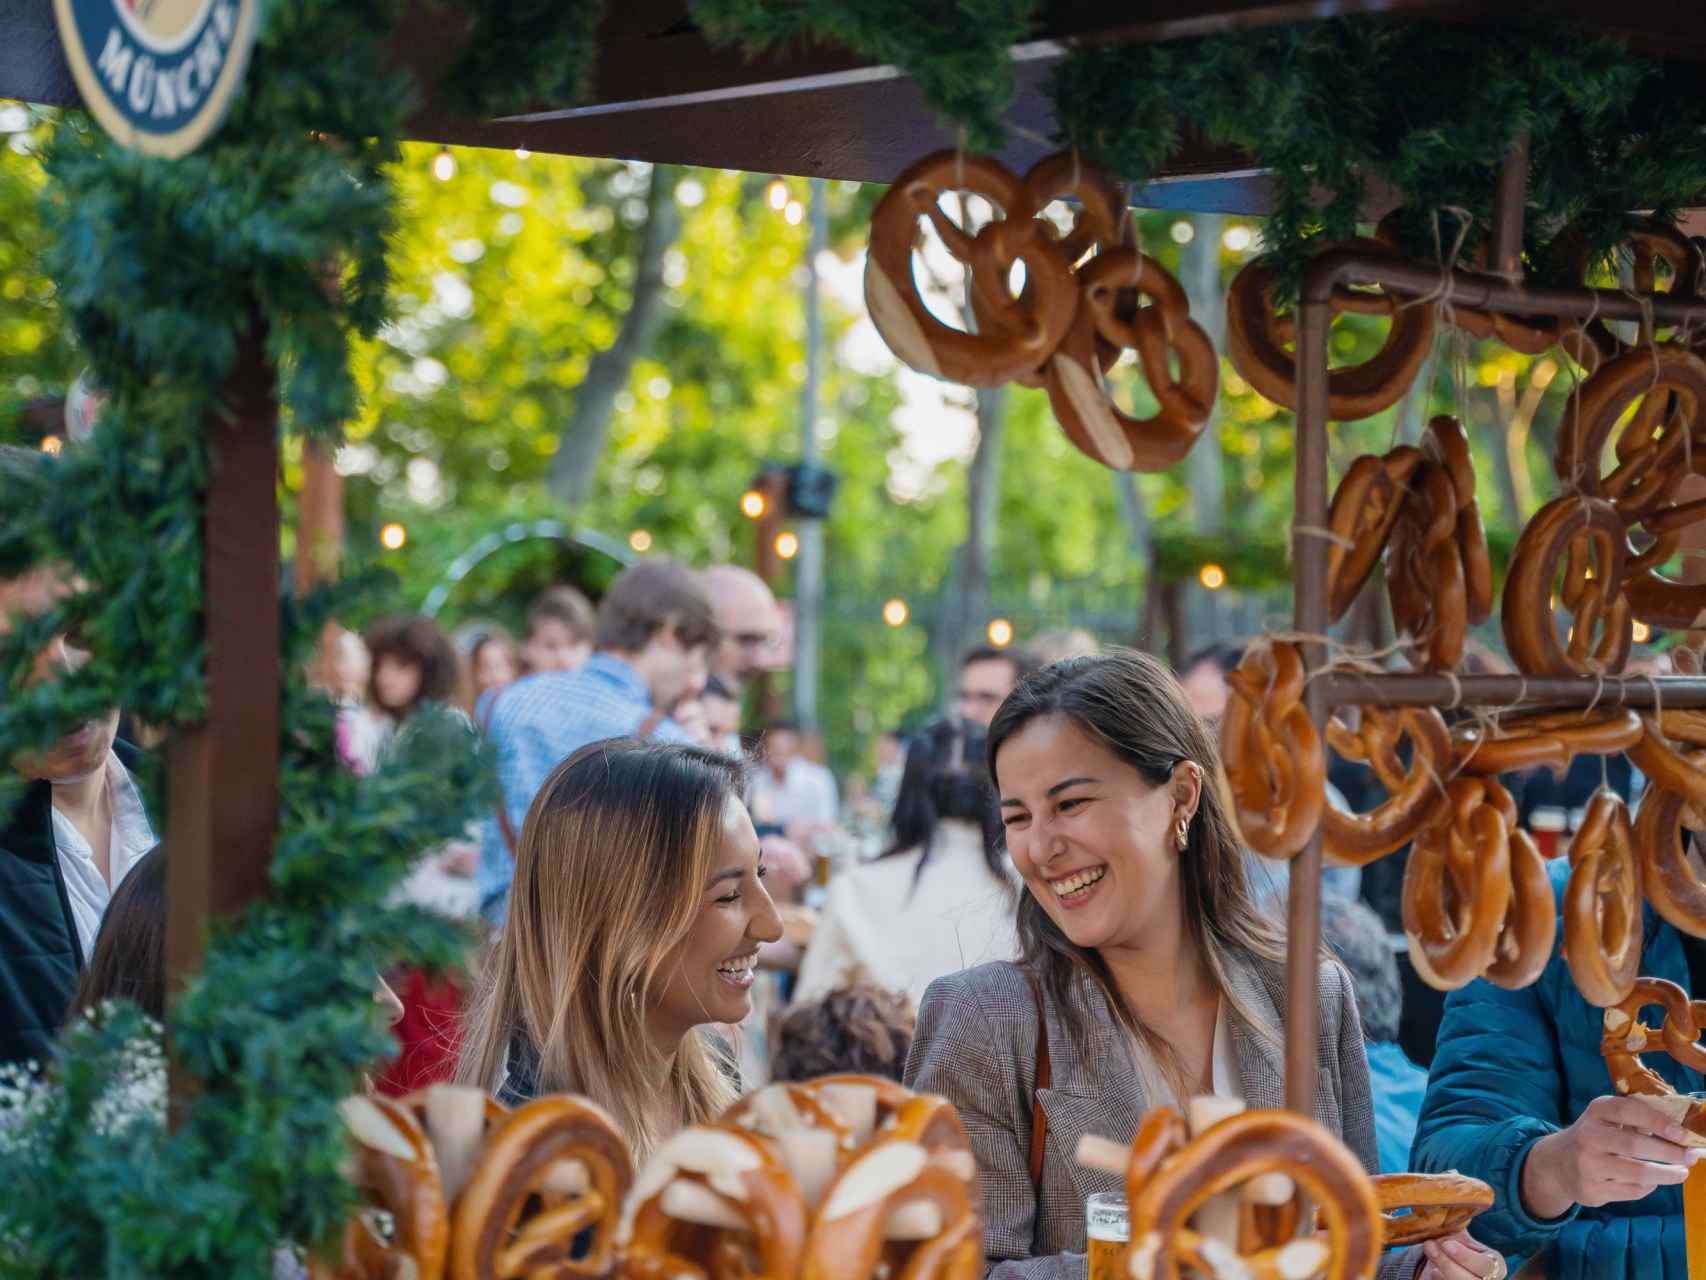 El puesto de pan pretzel del jardín de Paulaner Biergarten.